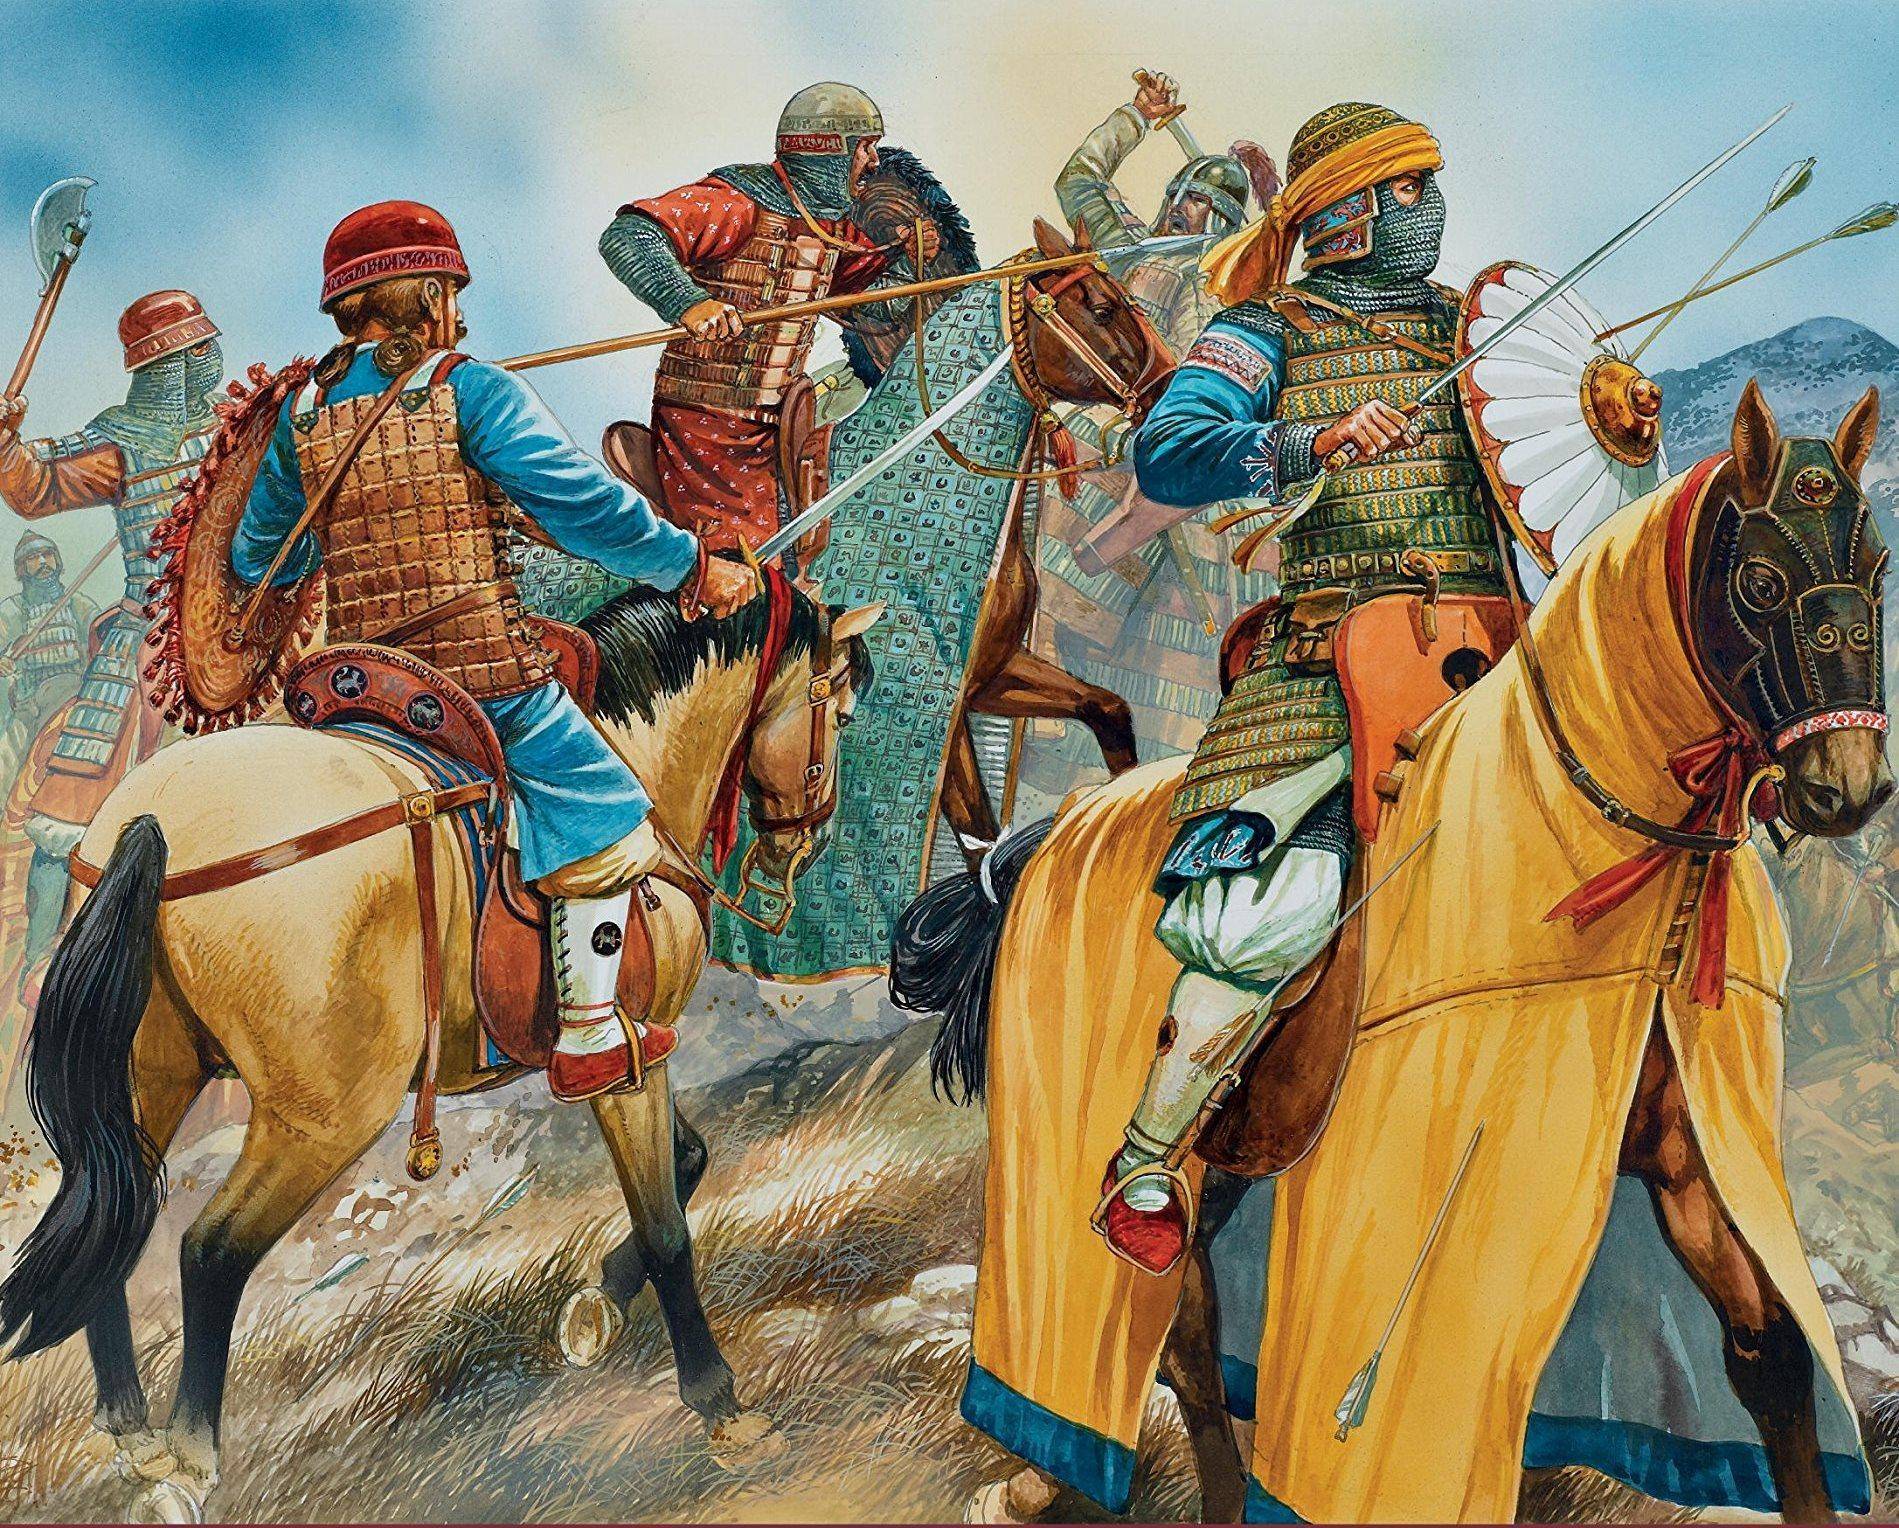 古代蒙古骑兵作战,为何要携带母马?这究竟是战略还是累赘?